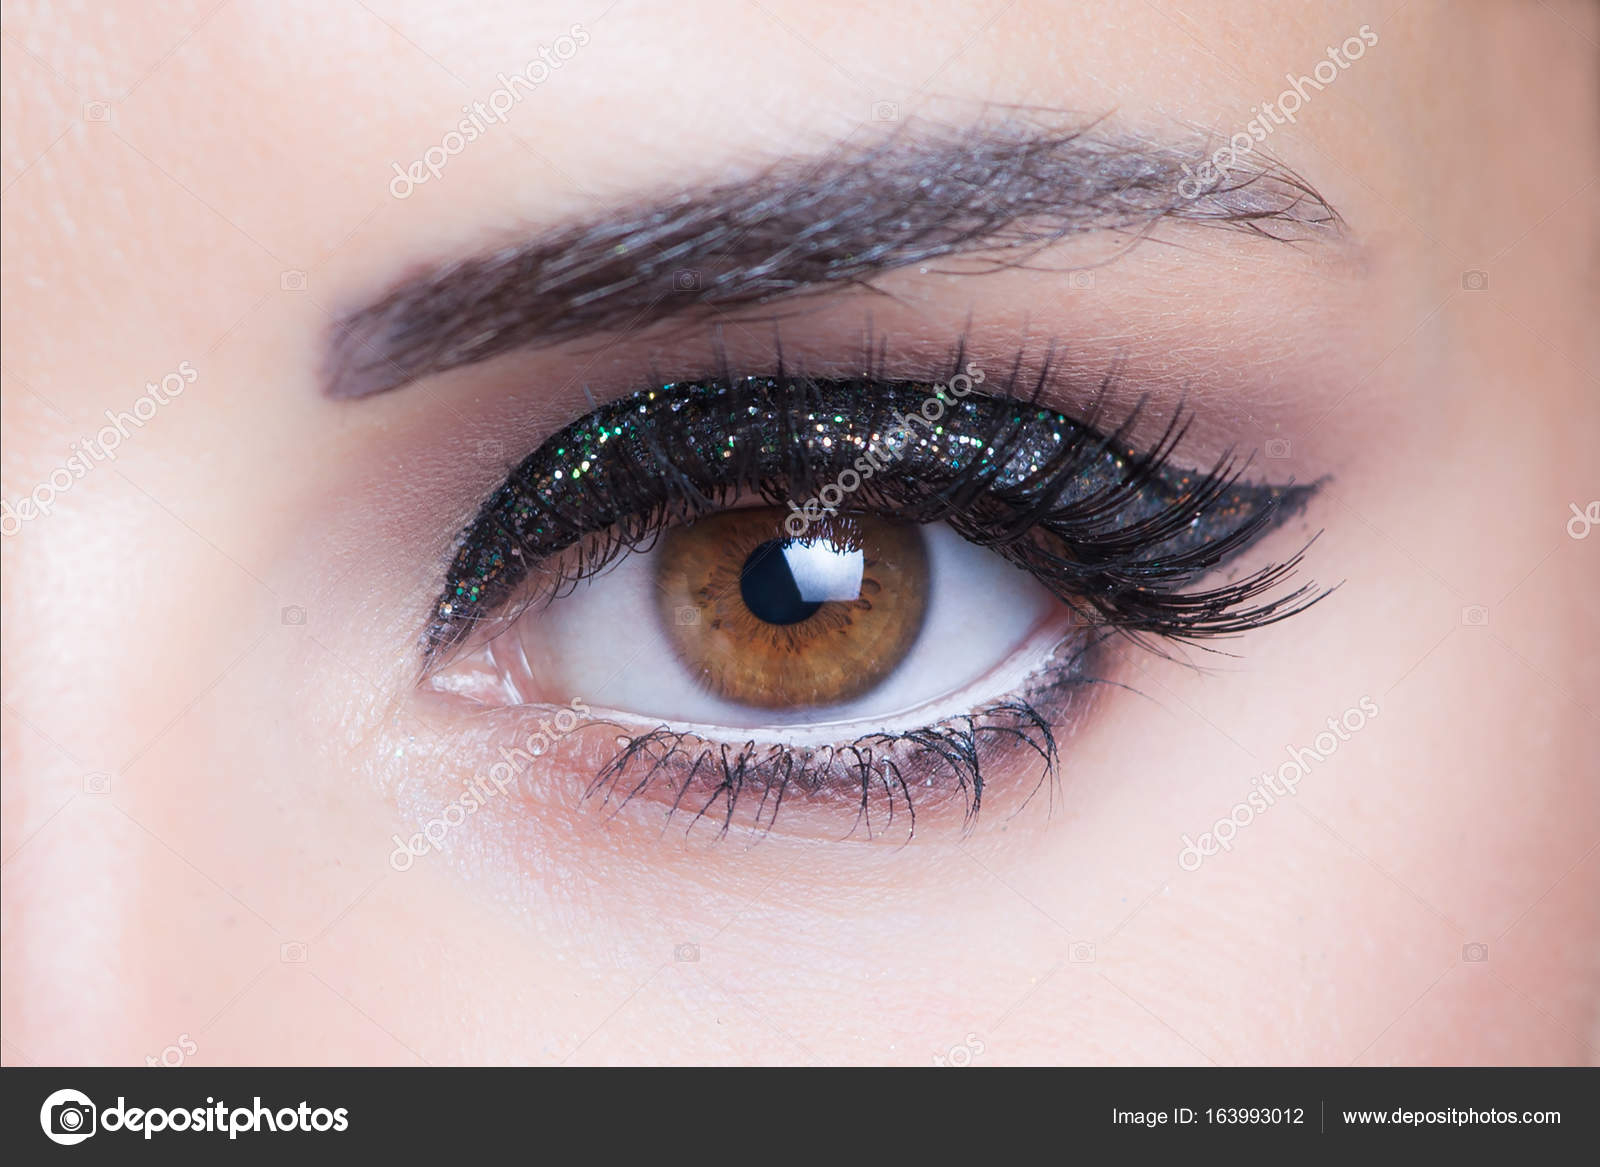 Evening Eye Makeup Woman Eye With Glittering Evening Makeup Closeup Studio Stock